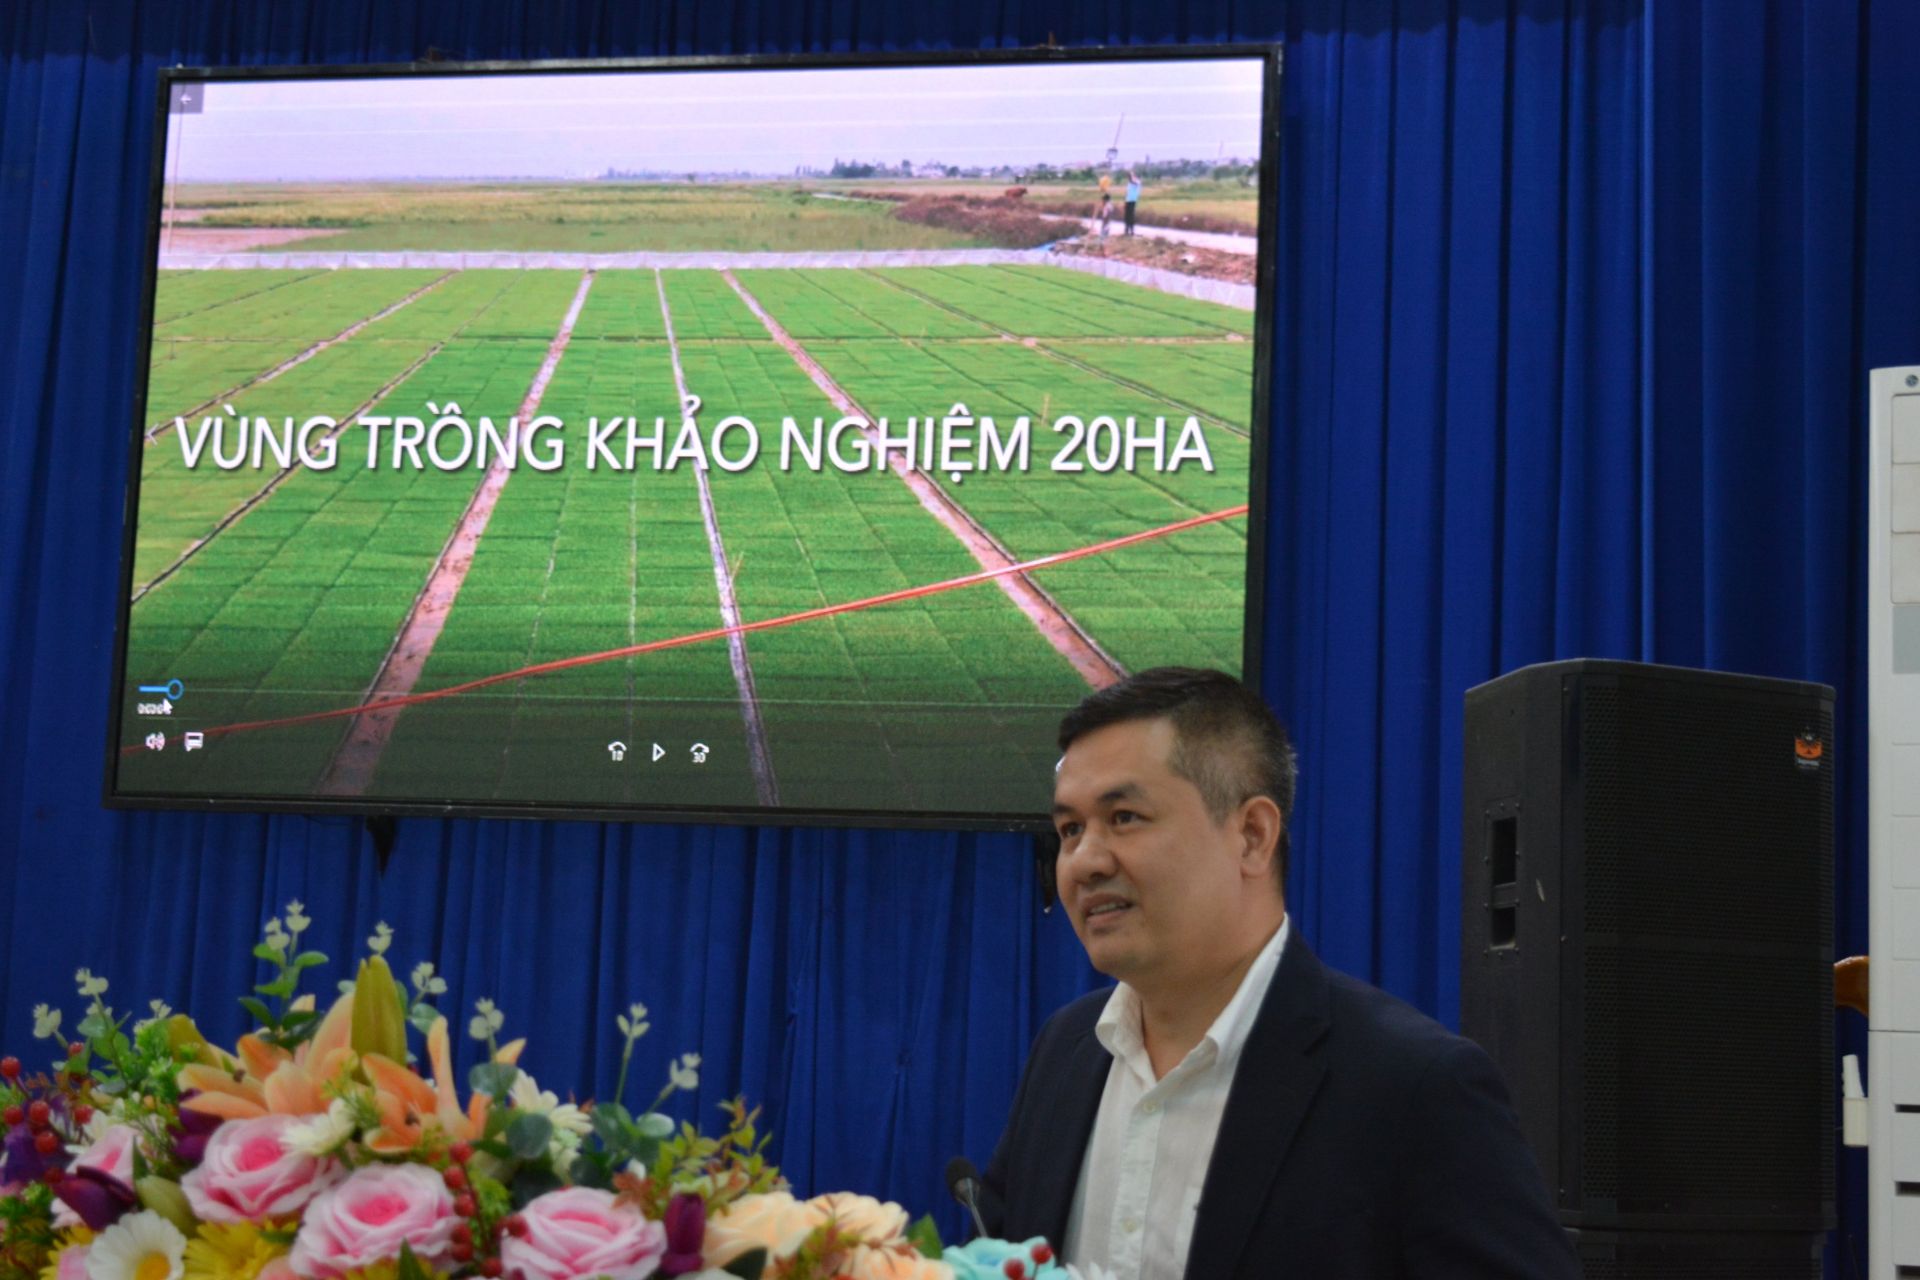 Ông Trần Trung Tuấn - Chủ tịch HĐQT Công ty cổ phần NaNo Kentech trình bày dự án